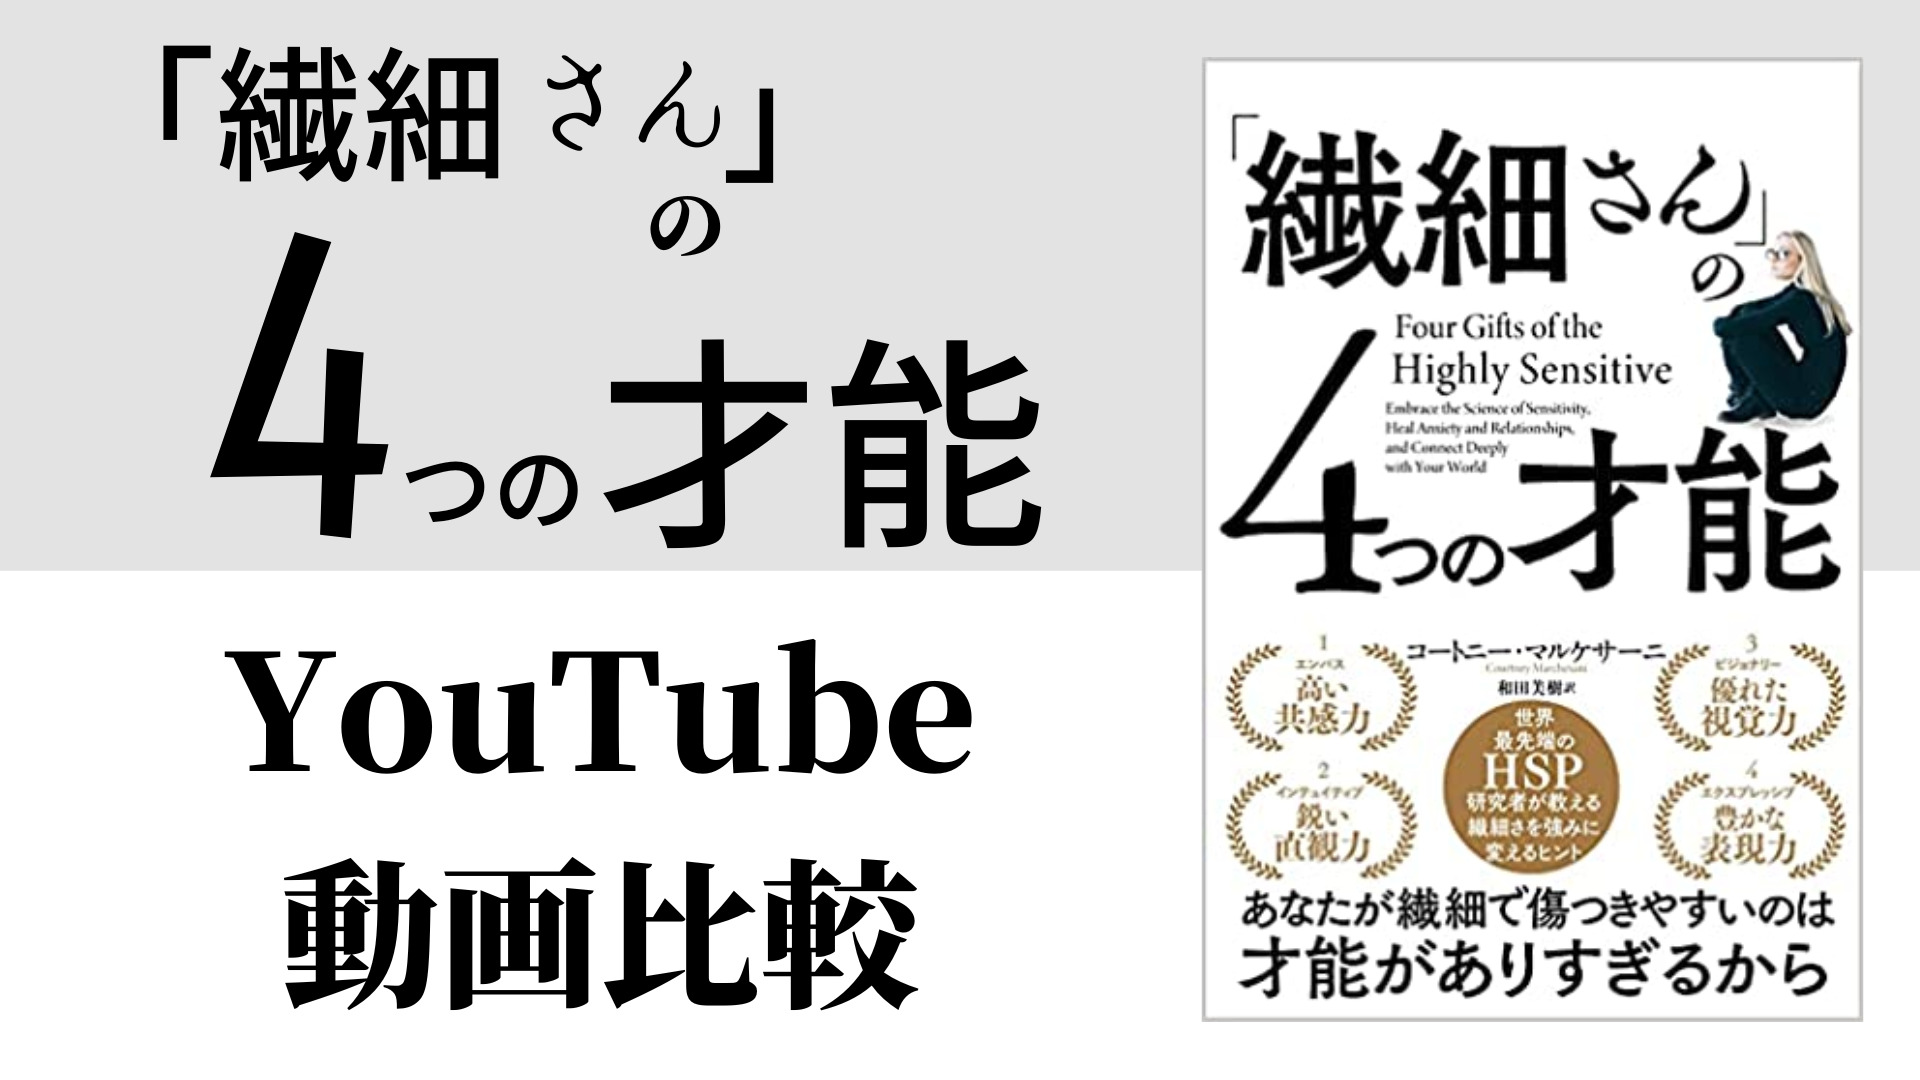 「繊細さん」の4つの才能 YouTube動画比較